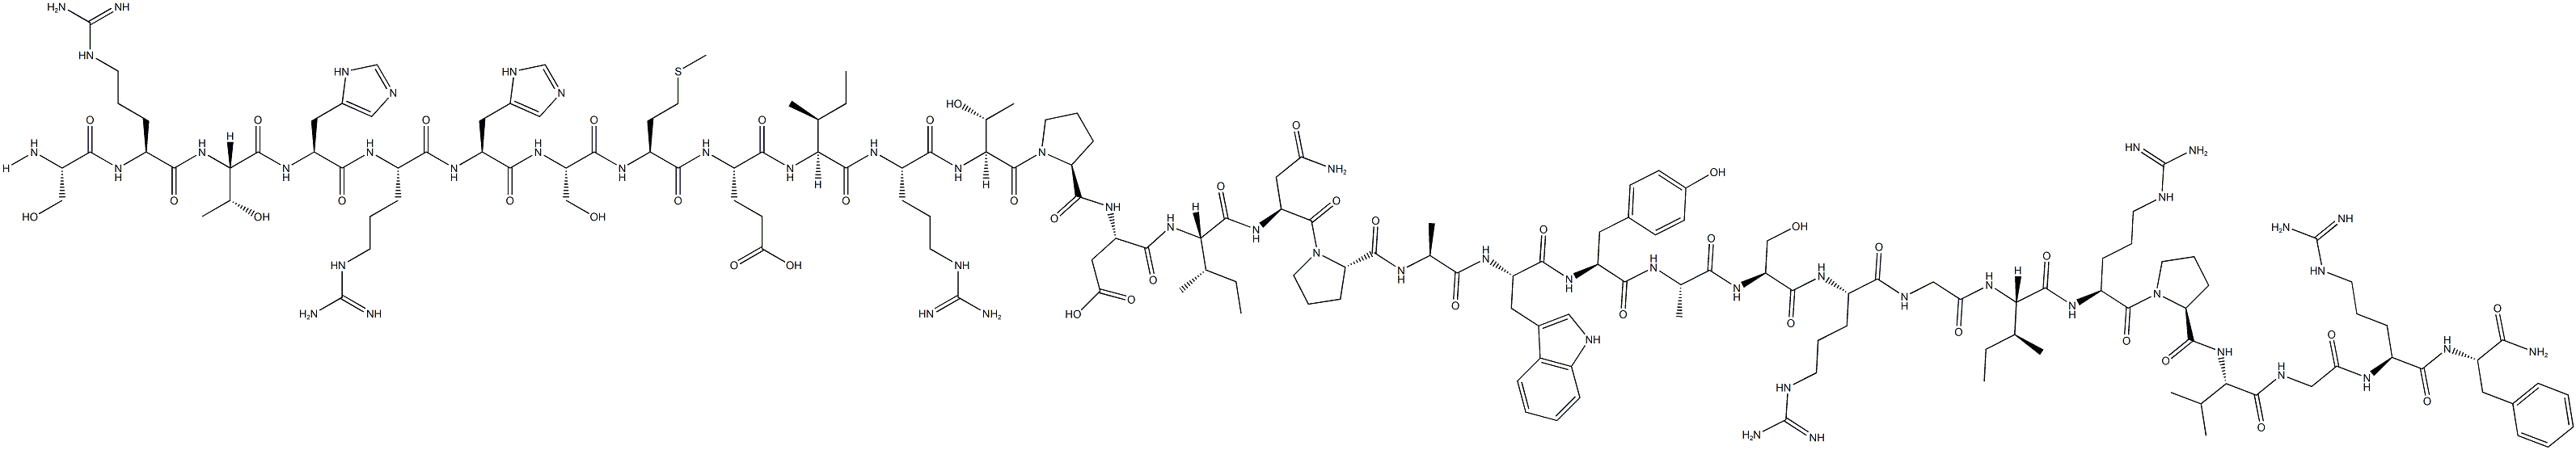 Prolactin-Releasing Peptide (1-31) (hum),CAS:215510-22-8